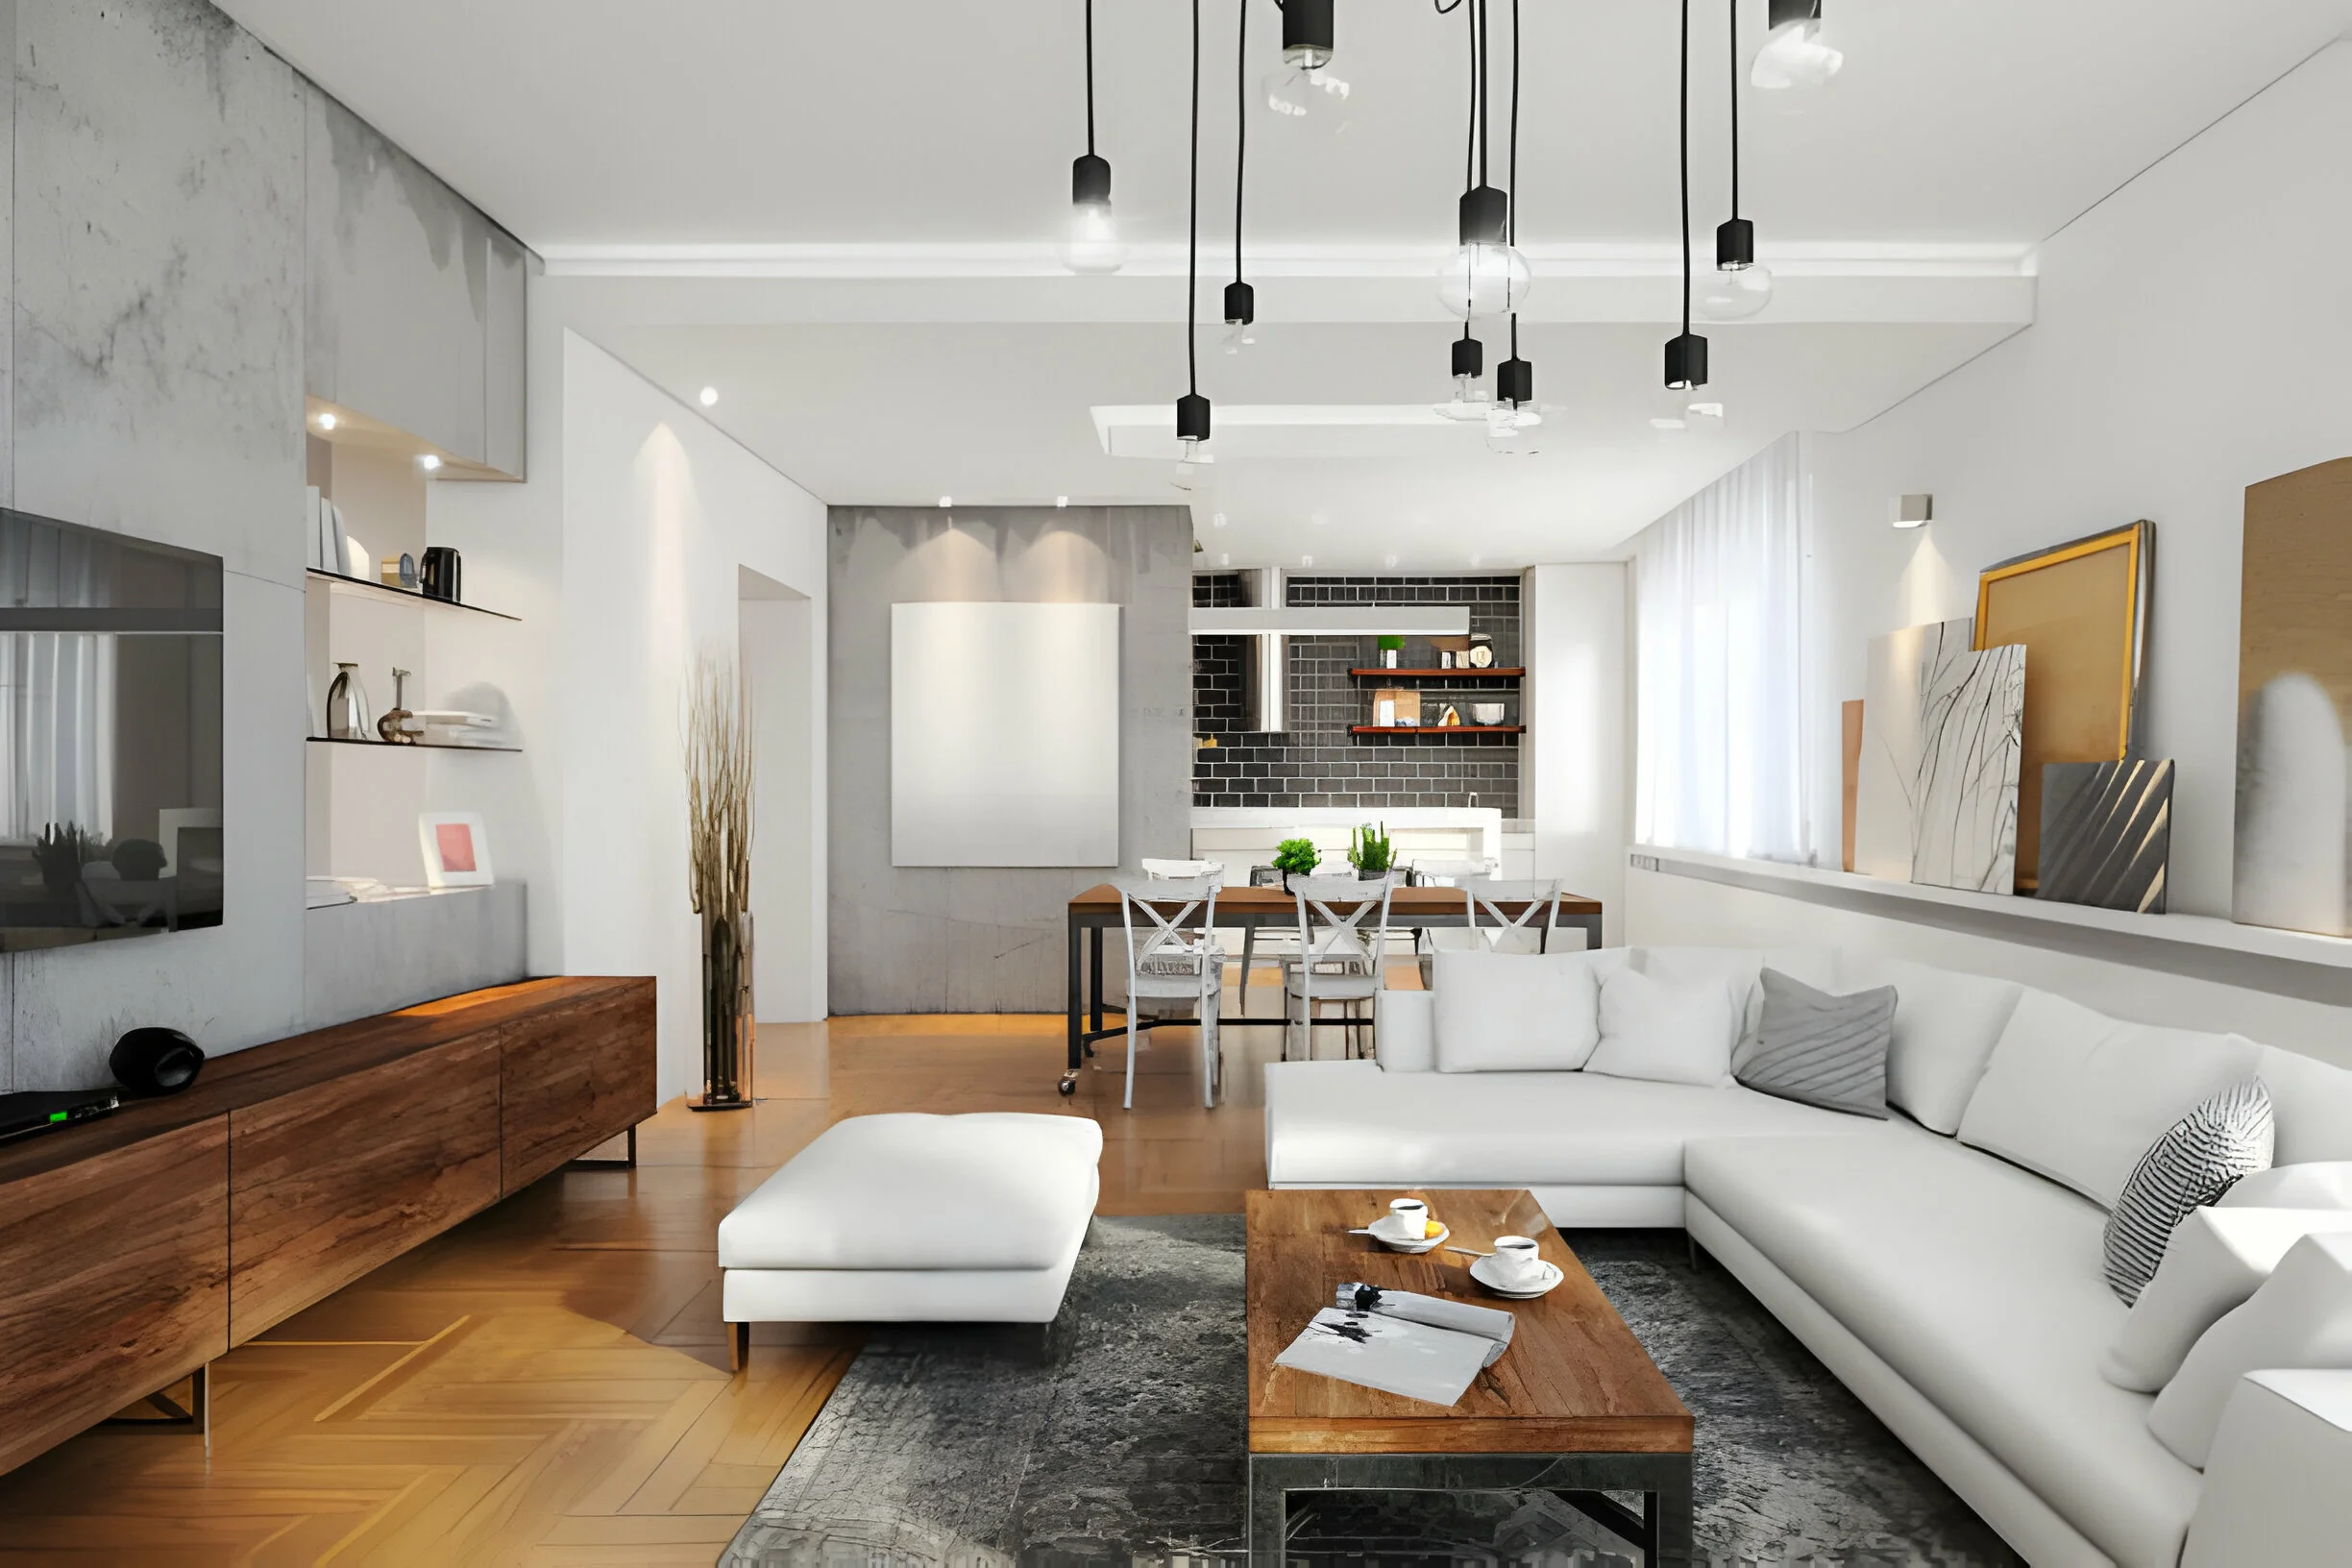 studio apartment interior design